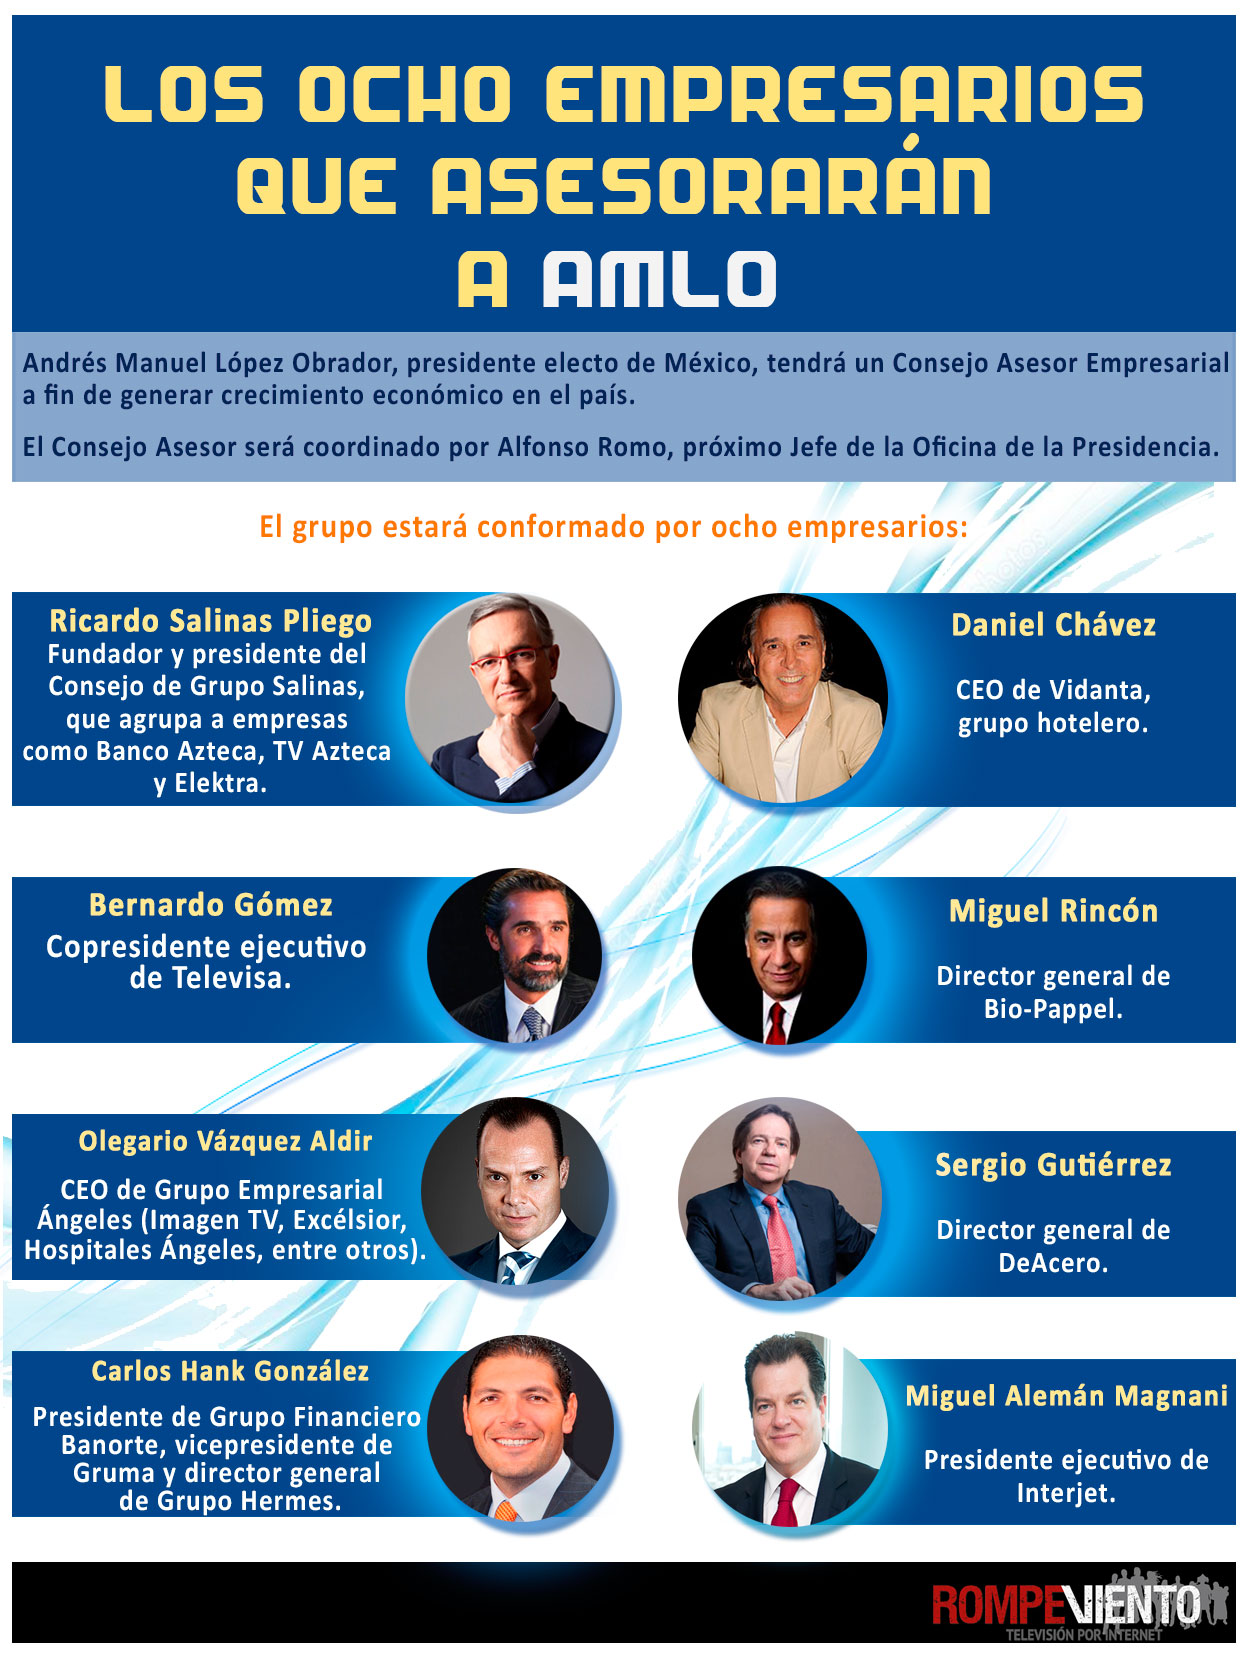 Los ocho empresarios que asesorarán a AMLO - Infografía